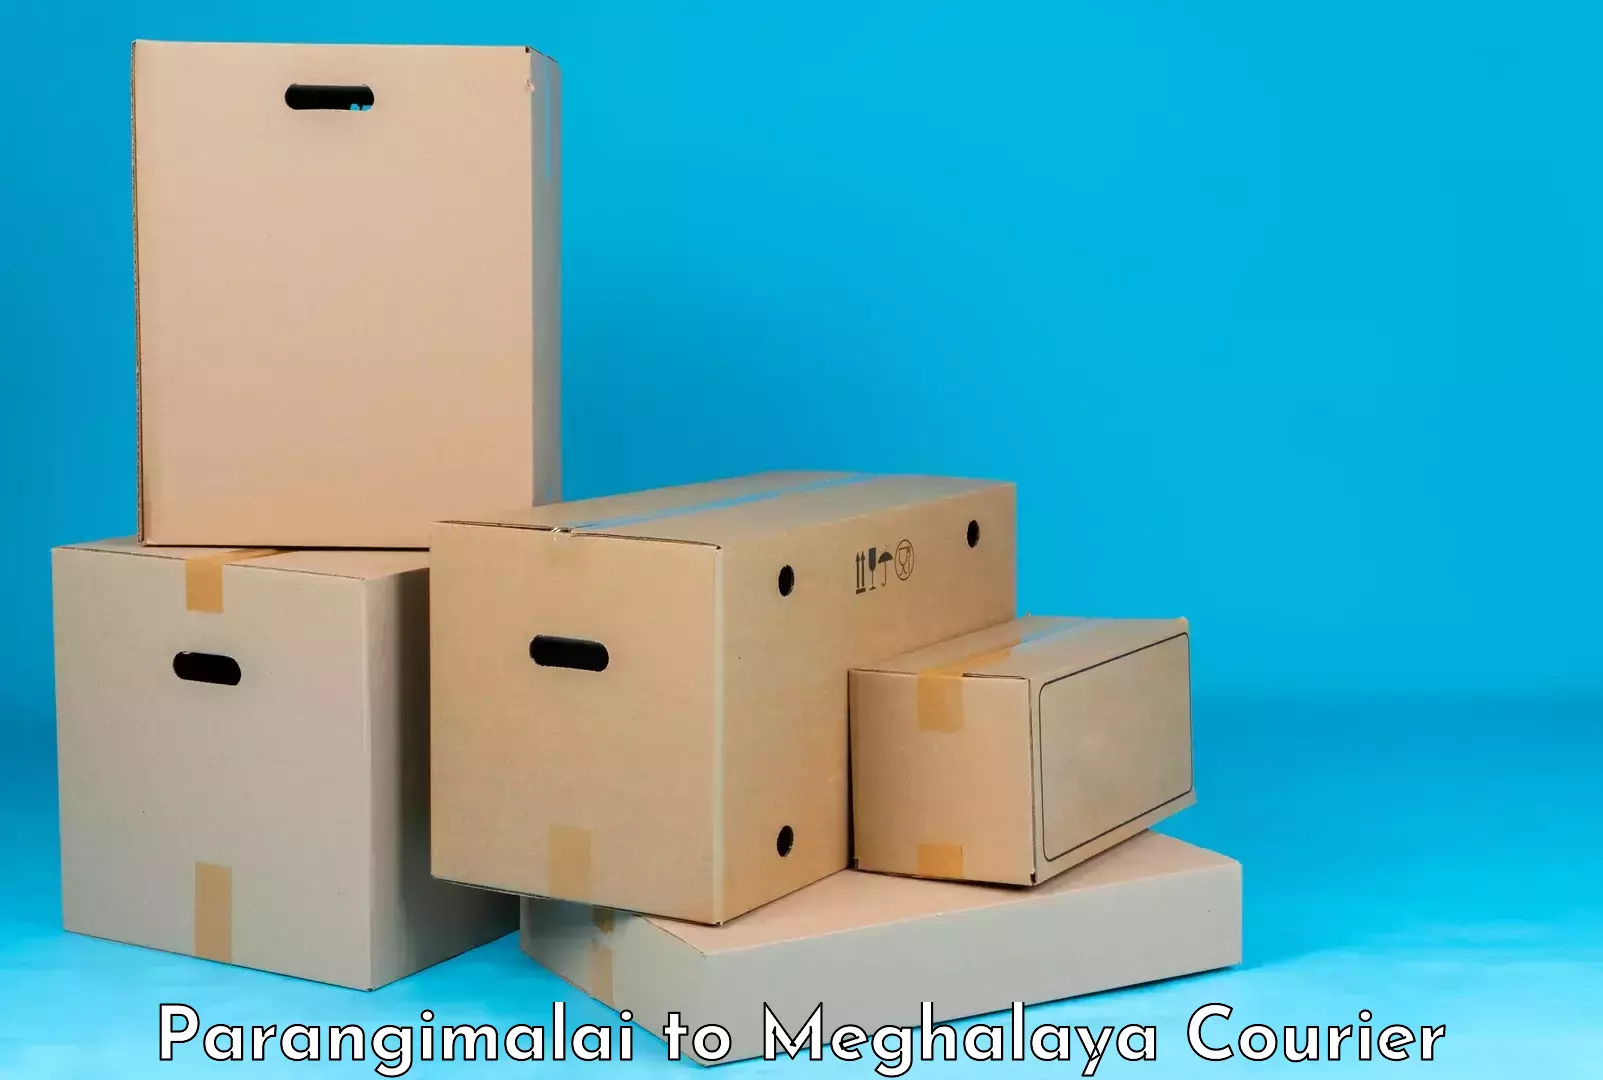 Luggage delivery system Parangimalai to Garobadha